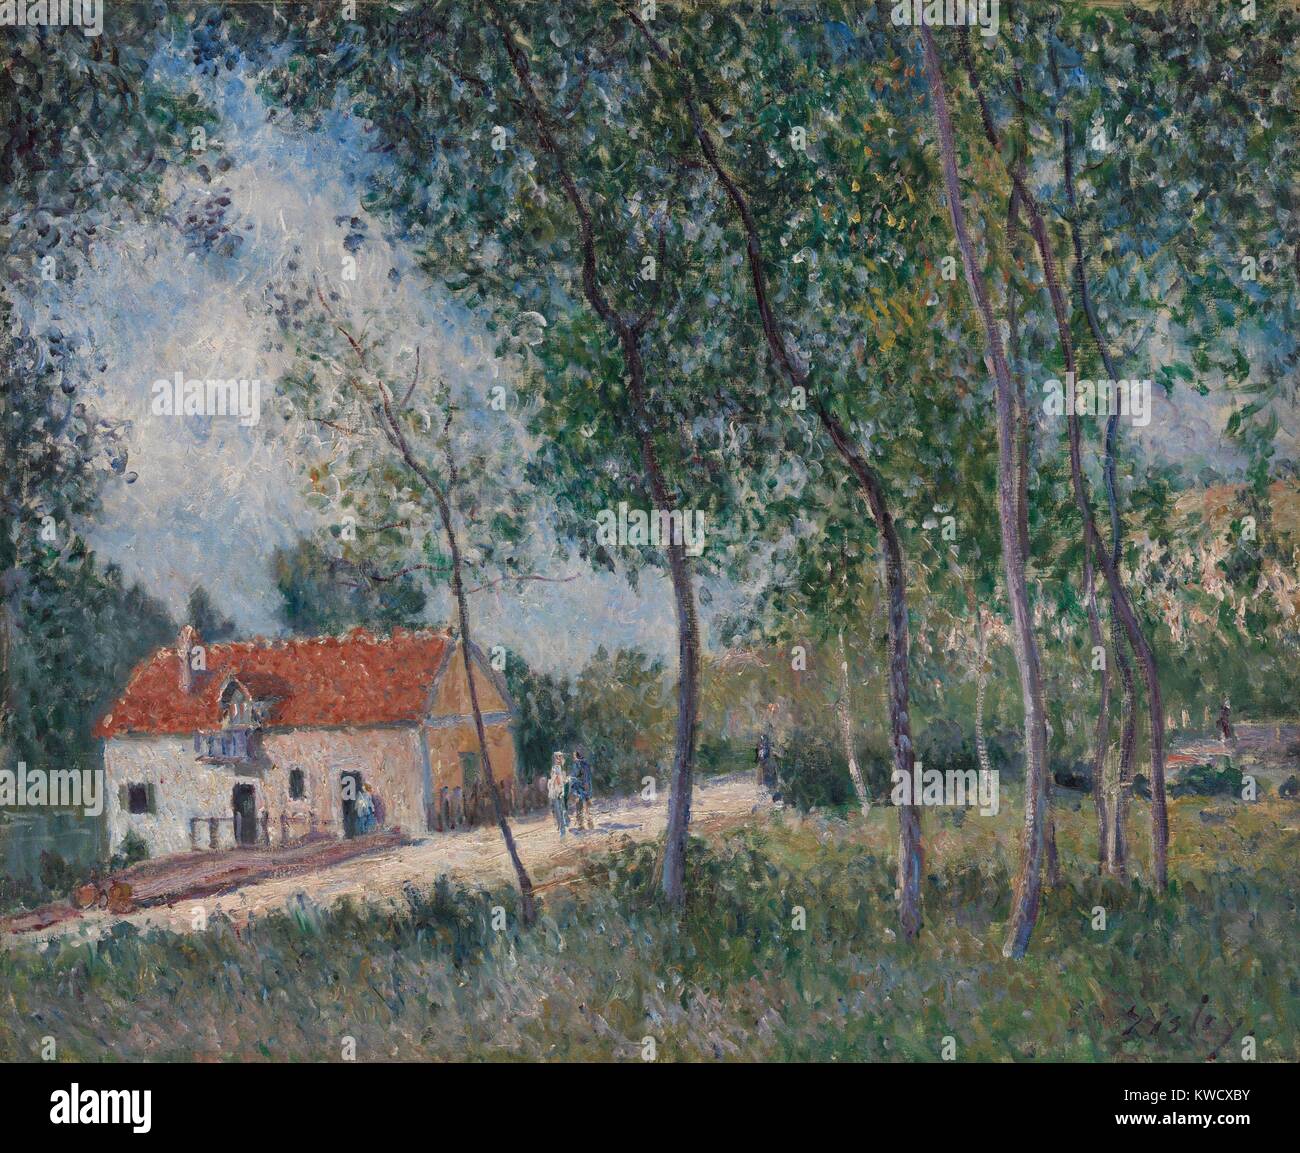 La route de Moret à Saint-mammès, par Alfred Sisley, 1883-85, huile sur toile impressionniste français. Appelée sur des vues pittoresques, Sisley s'installe à l'orée de la forêt de Fontainebleau (BSLOC 2017 3 130) Banque D'Images